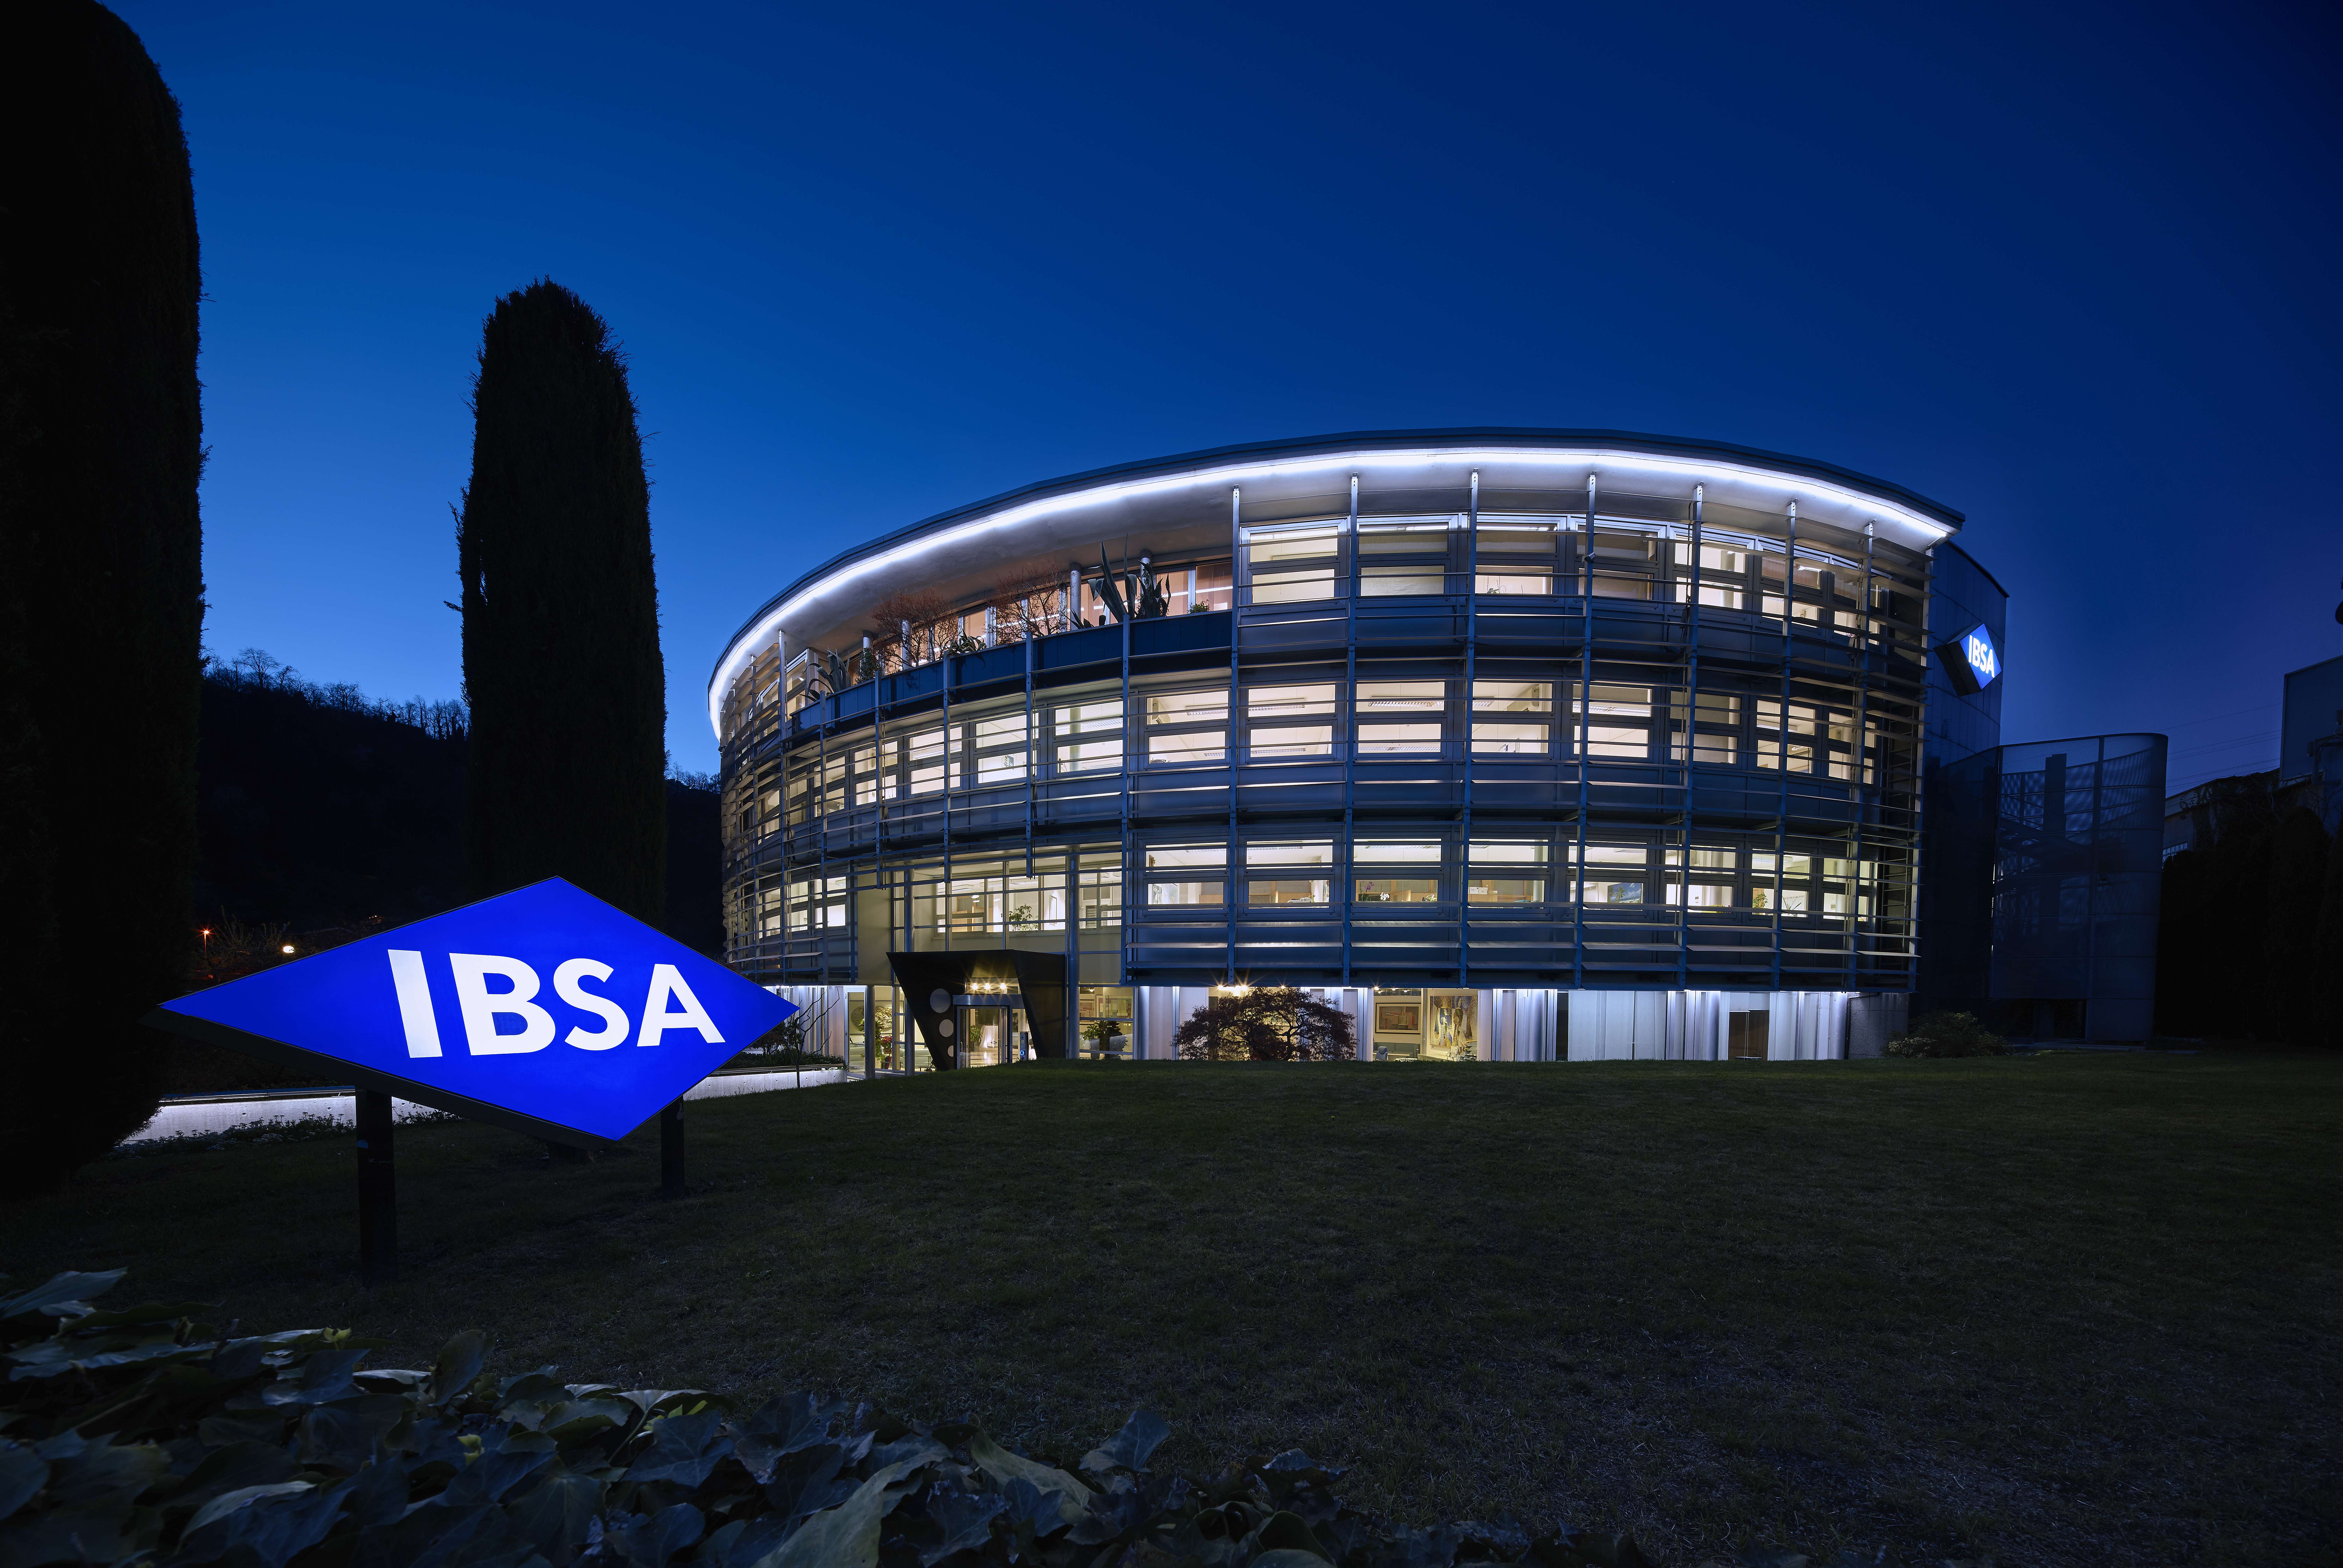 IBSA’s headquarters in Lugano, Switzerland